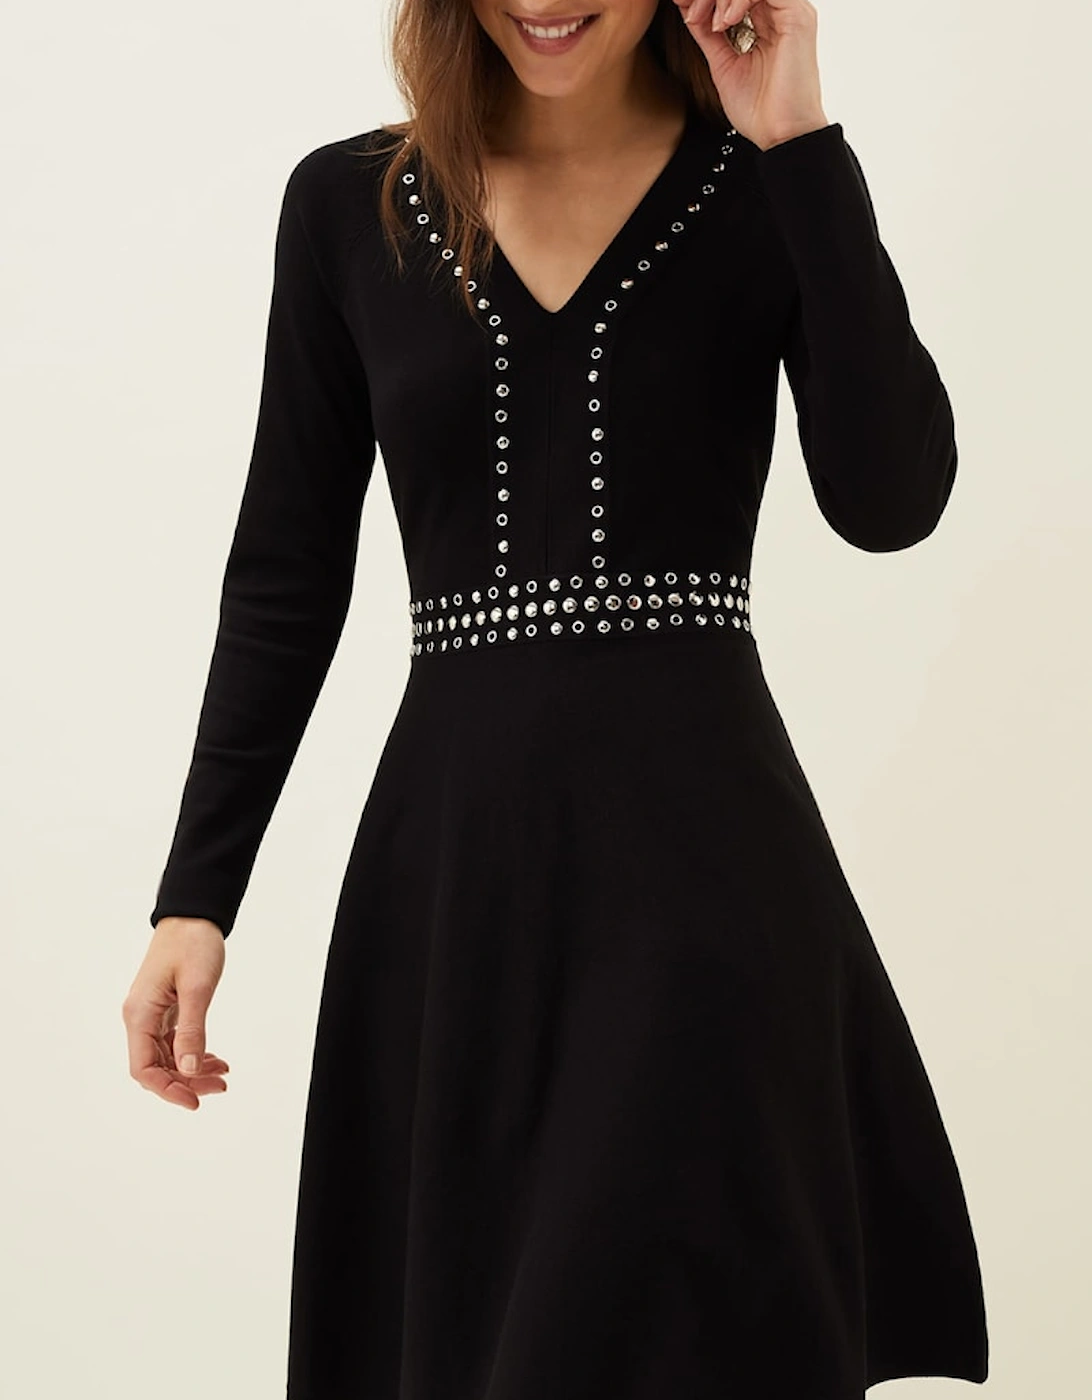 Claren Studded Knitted Dress